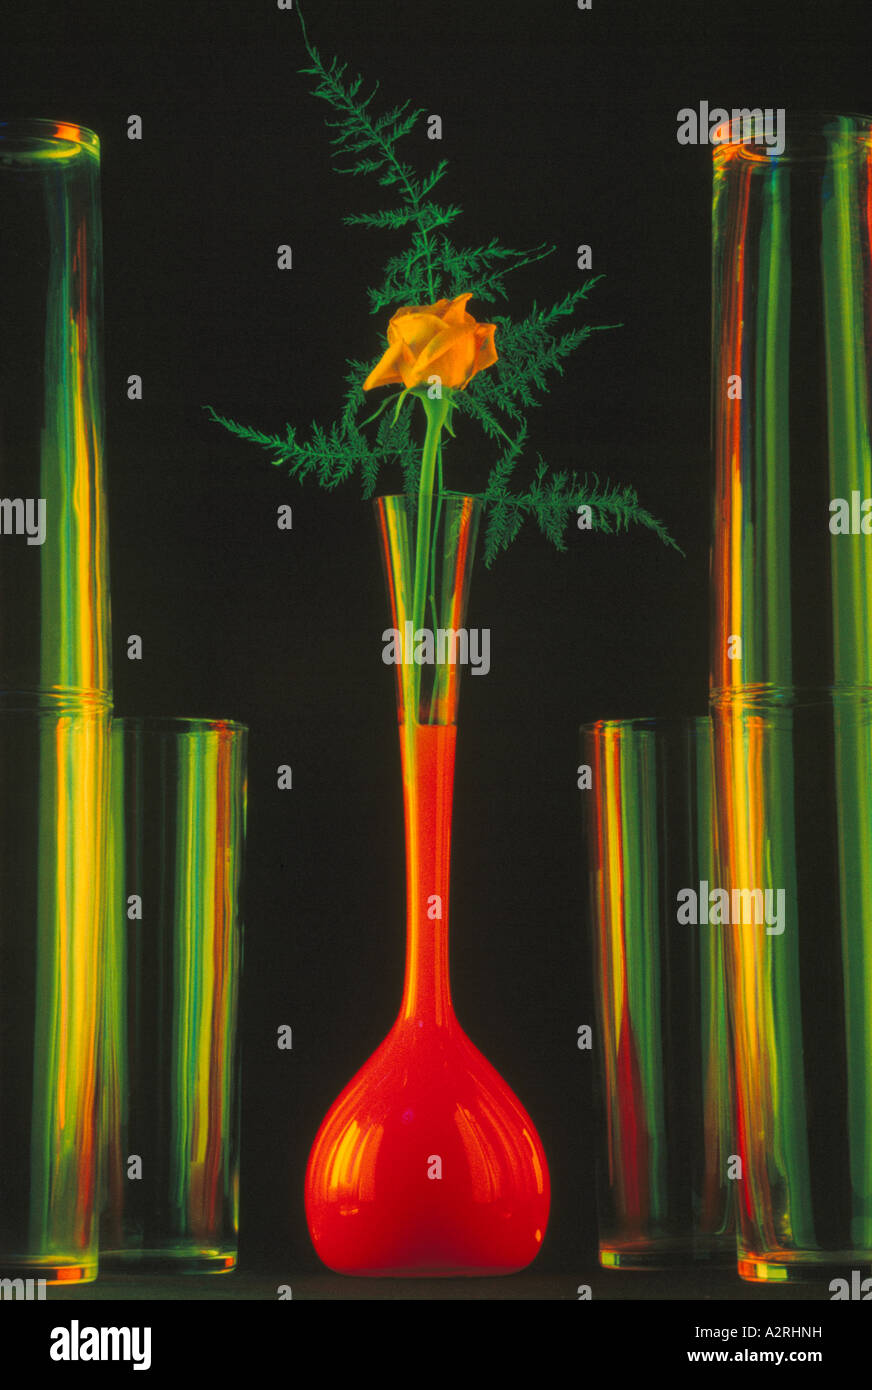 Rose jaune Fleur Vase en verre rempli de liquide rouge, la rangée de vases contre un Backgrond Noir, photographie expérimentale Banque D'Images